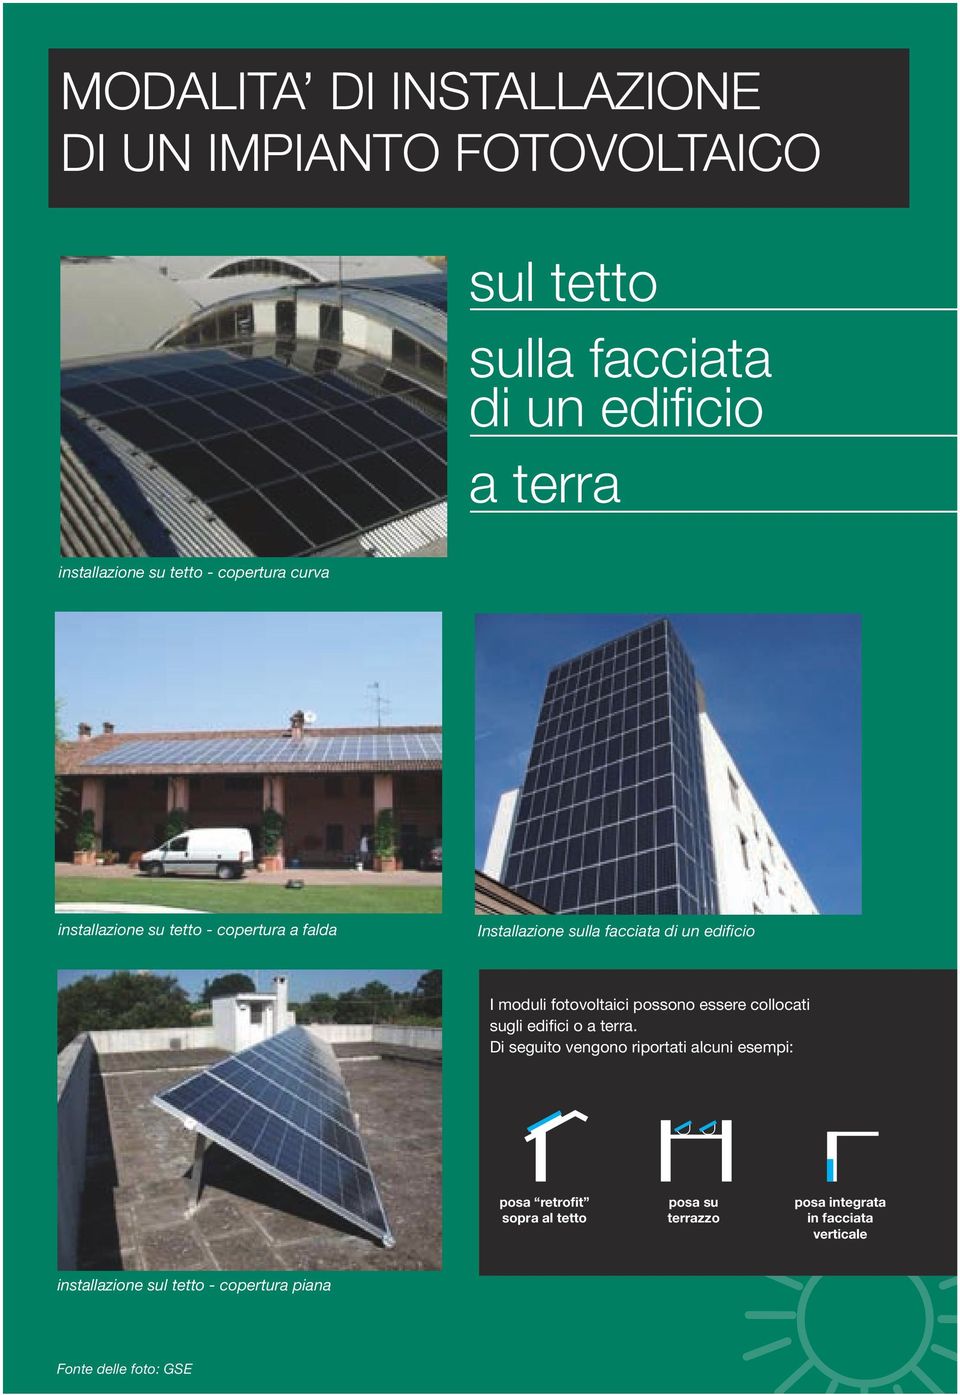 fotovoltaici possono essere collocati sugli edifici o a terra.